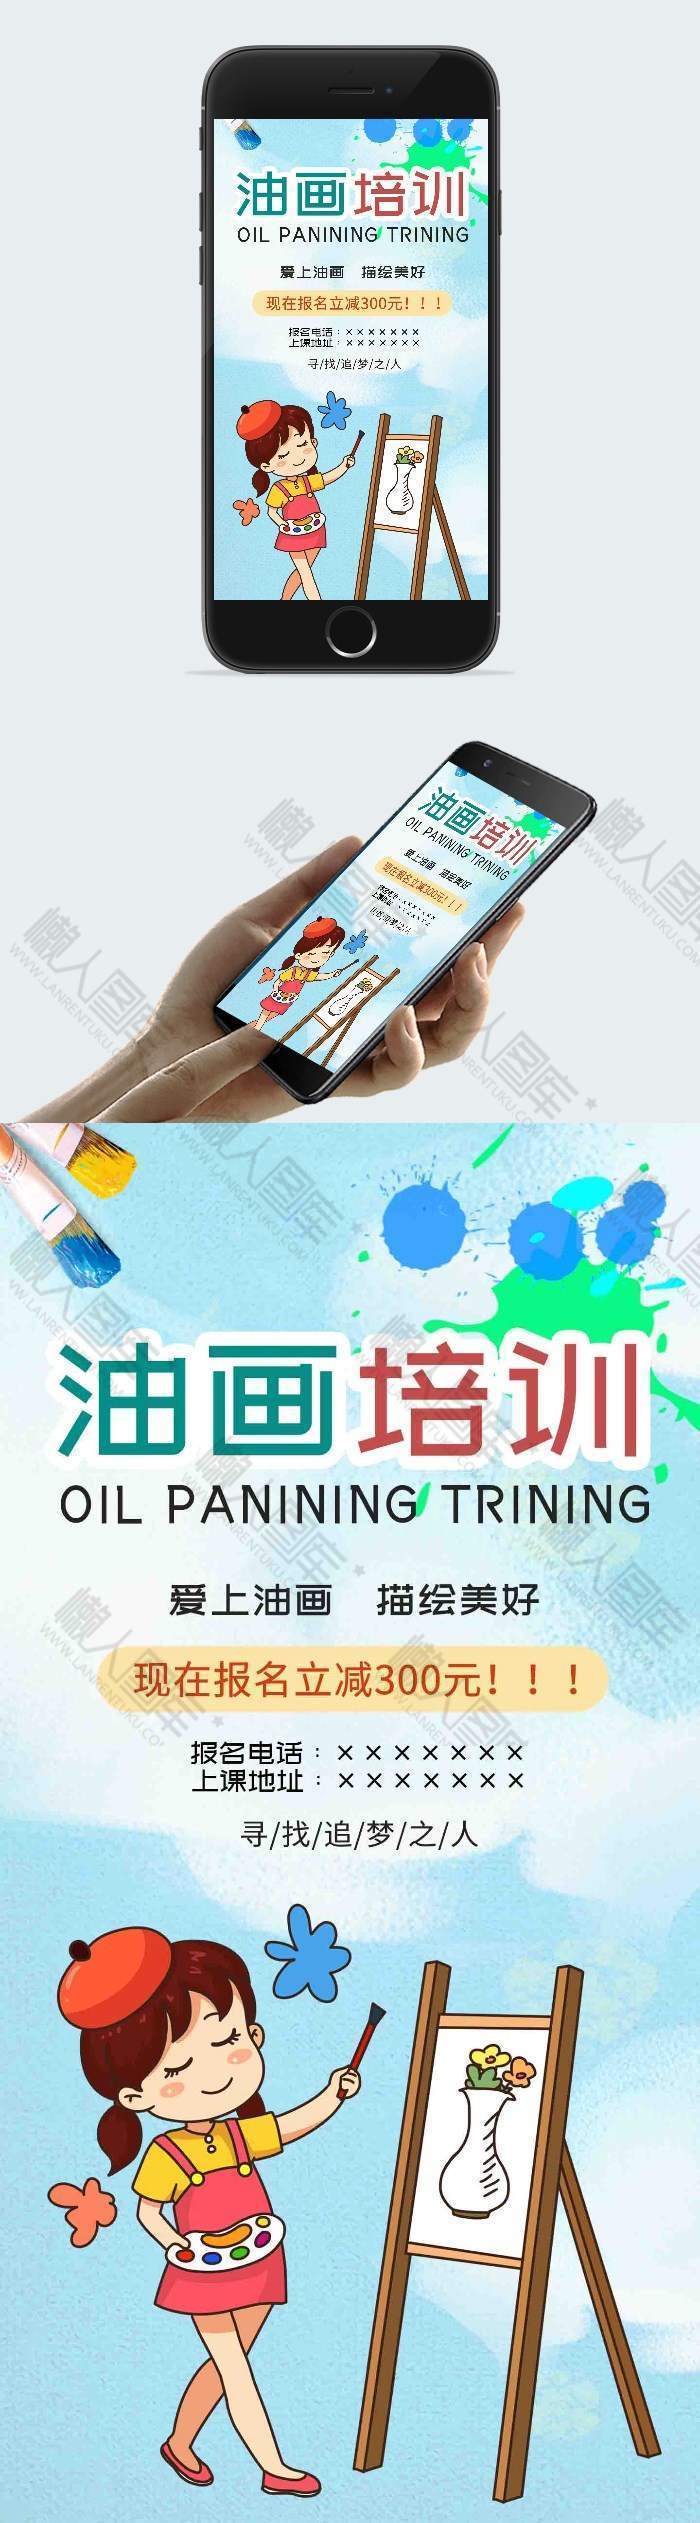 暑期油画培训班招生海报